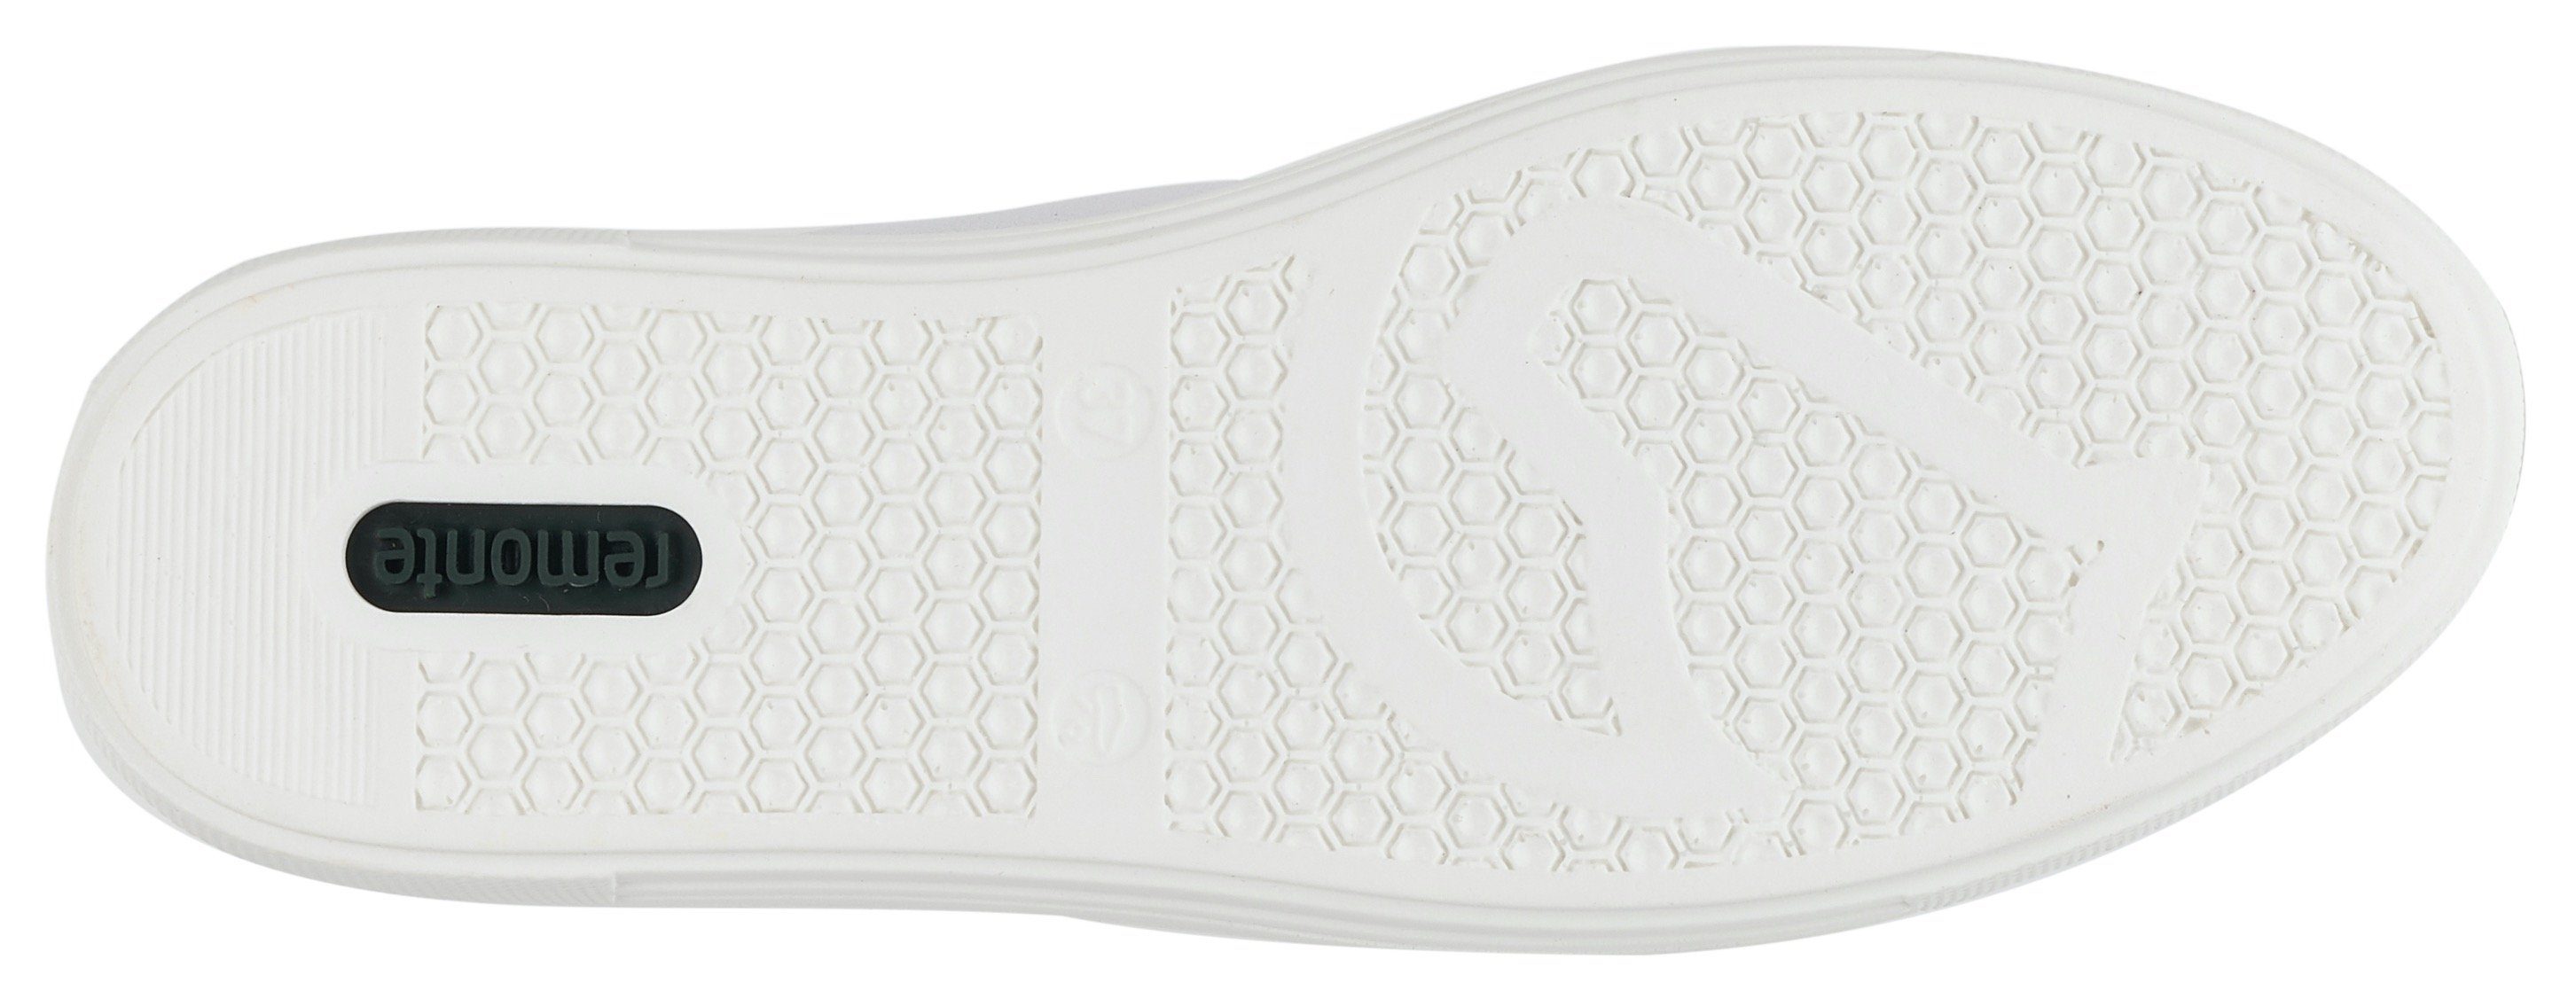 herausnehmbarem Soft-Foam Plateausneaker mit Fußbett weiß-kupfer Remonte